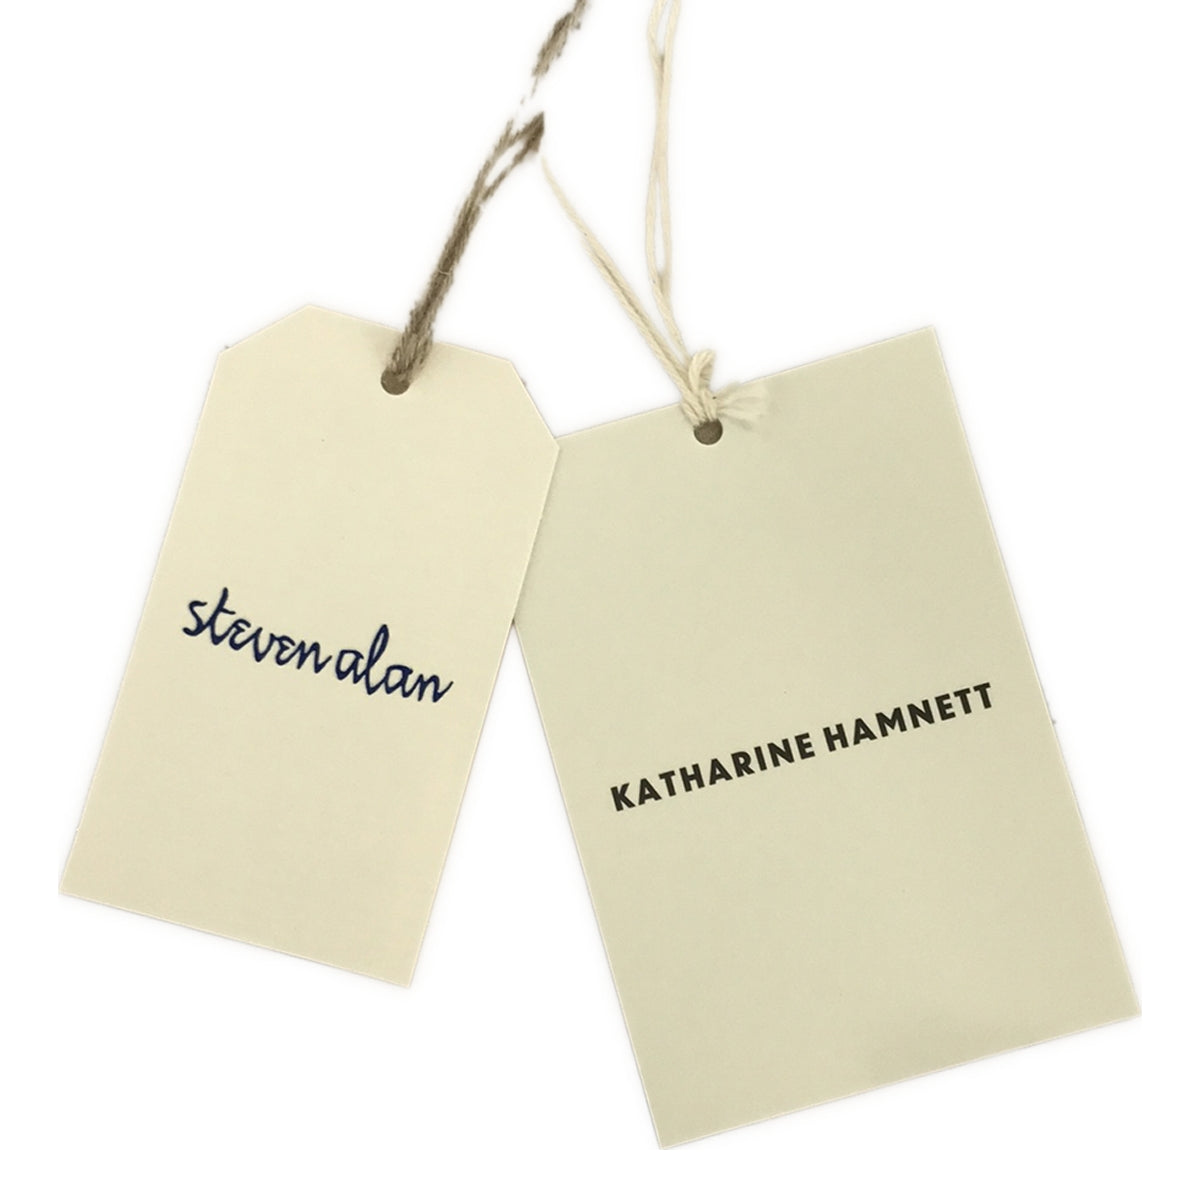 KATHARINE HAMNETT LONDON / キャサリンハムネット | Steven Alan 取扱い BAND COLLAR SHIRT シャツ | M | メンズ